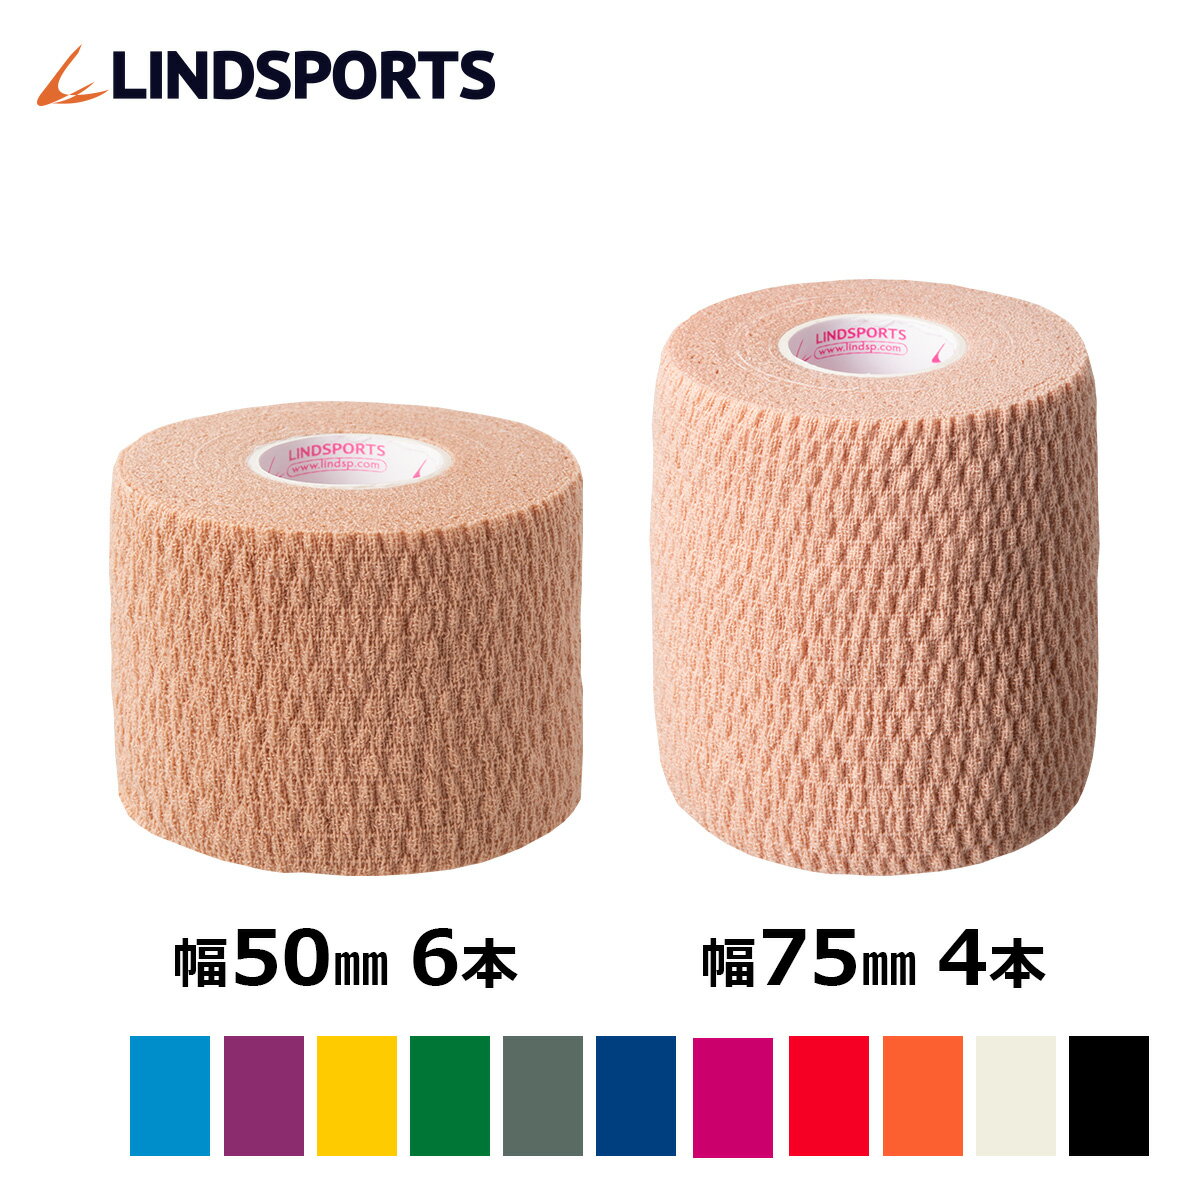 ソフト伸縮テープ NEO ソフトリップ 50mm×6.9m 6本入/75mm×6.9m 4本入 同色同サイズスモールパック テーピングテープ LINDSPORTS リンドスポーツ